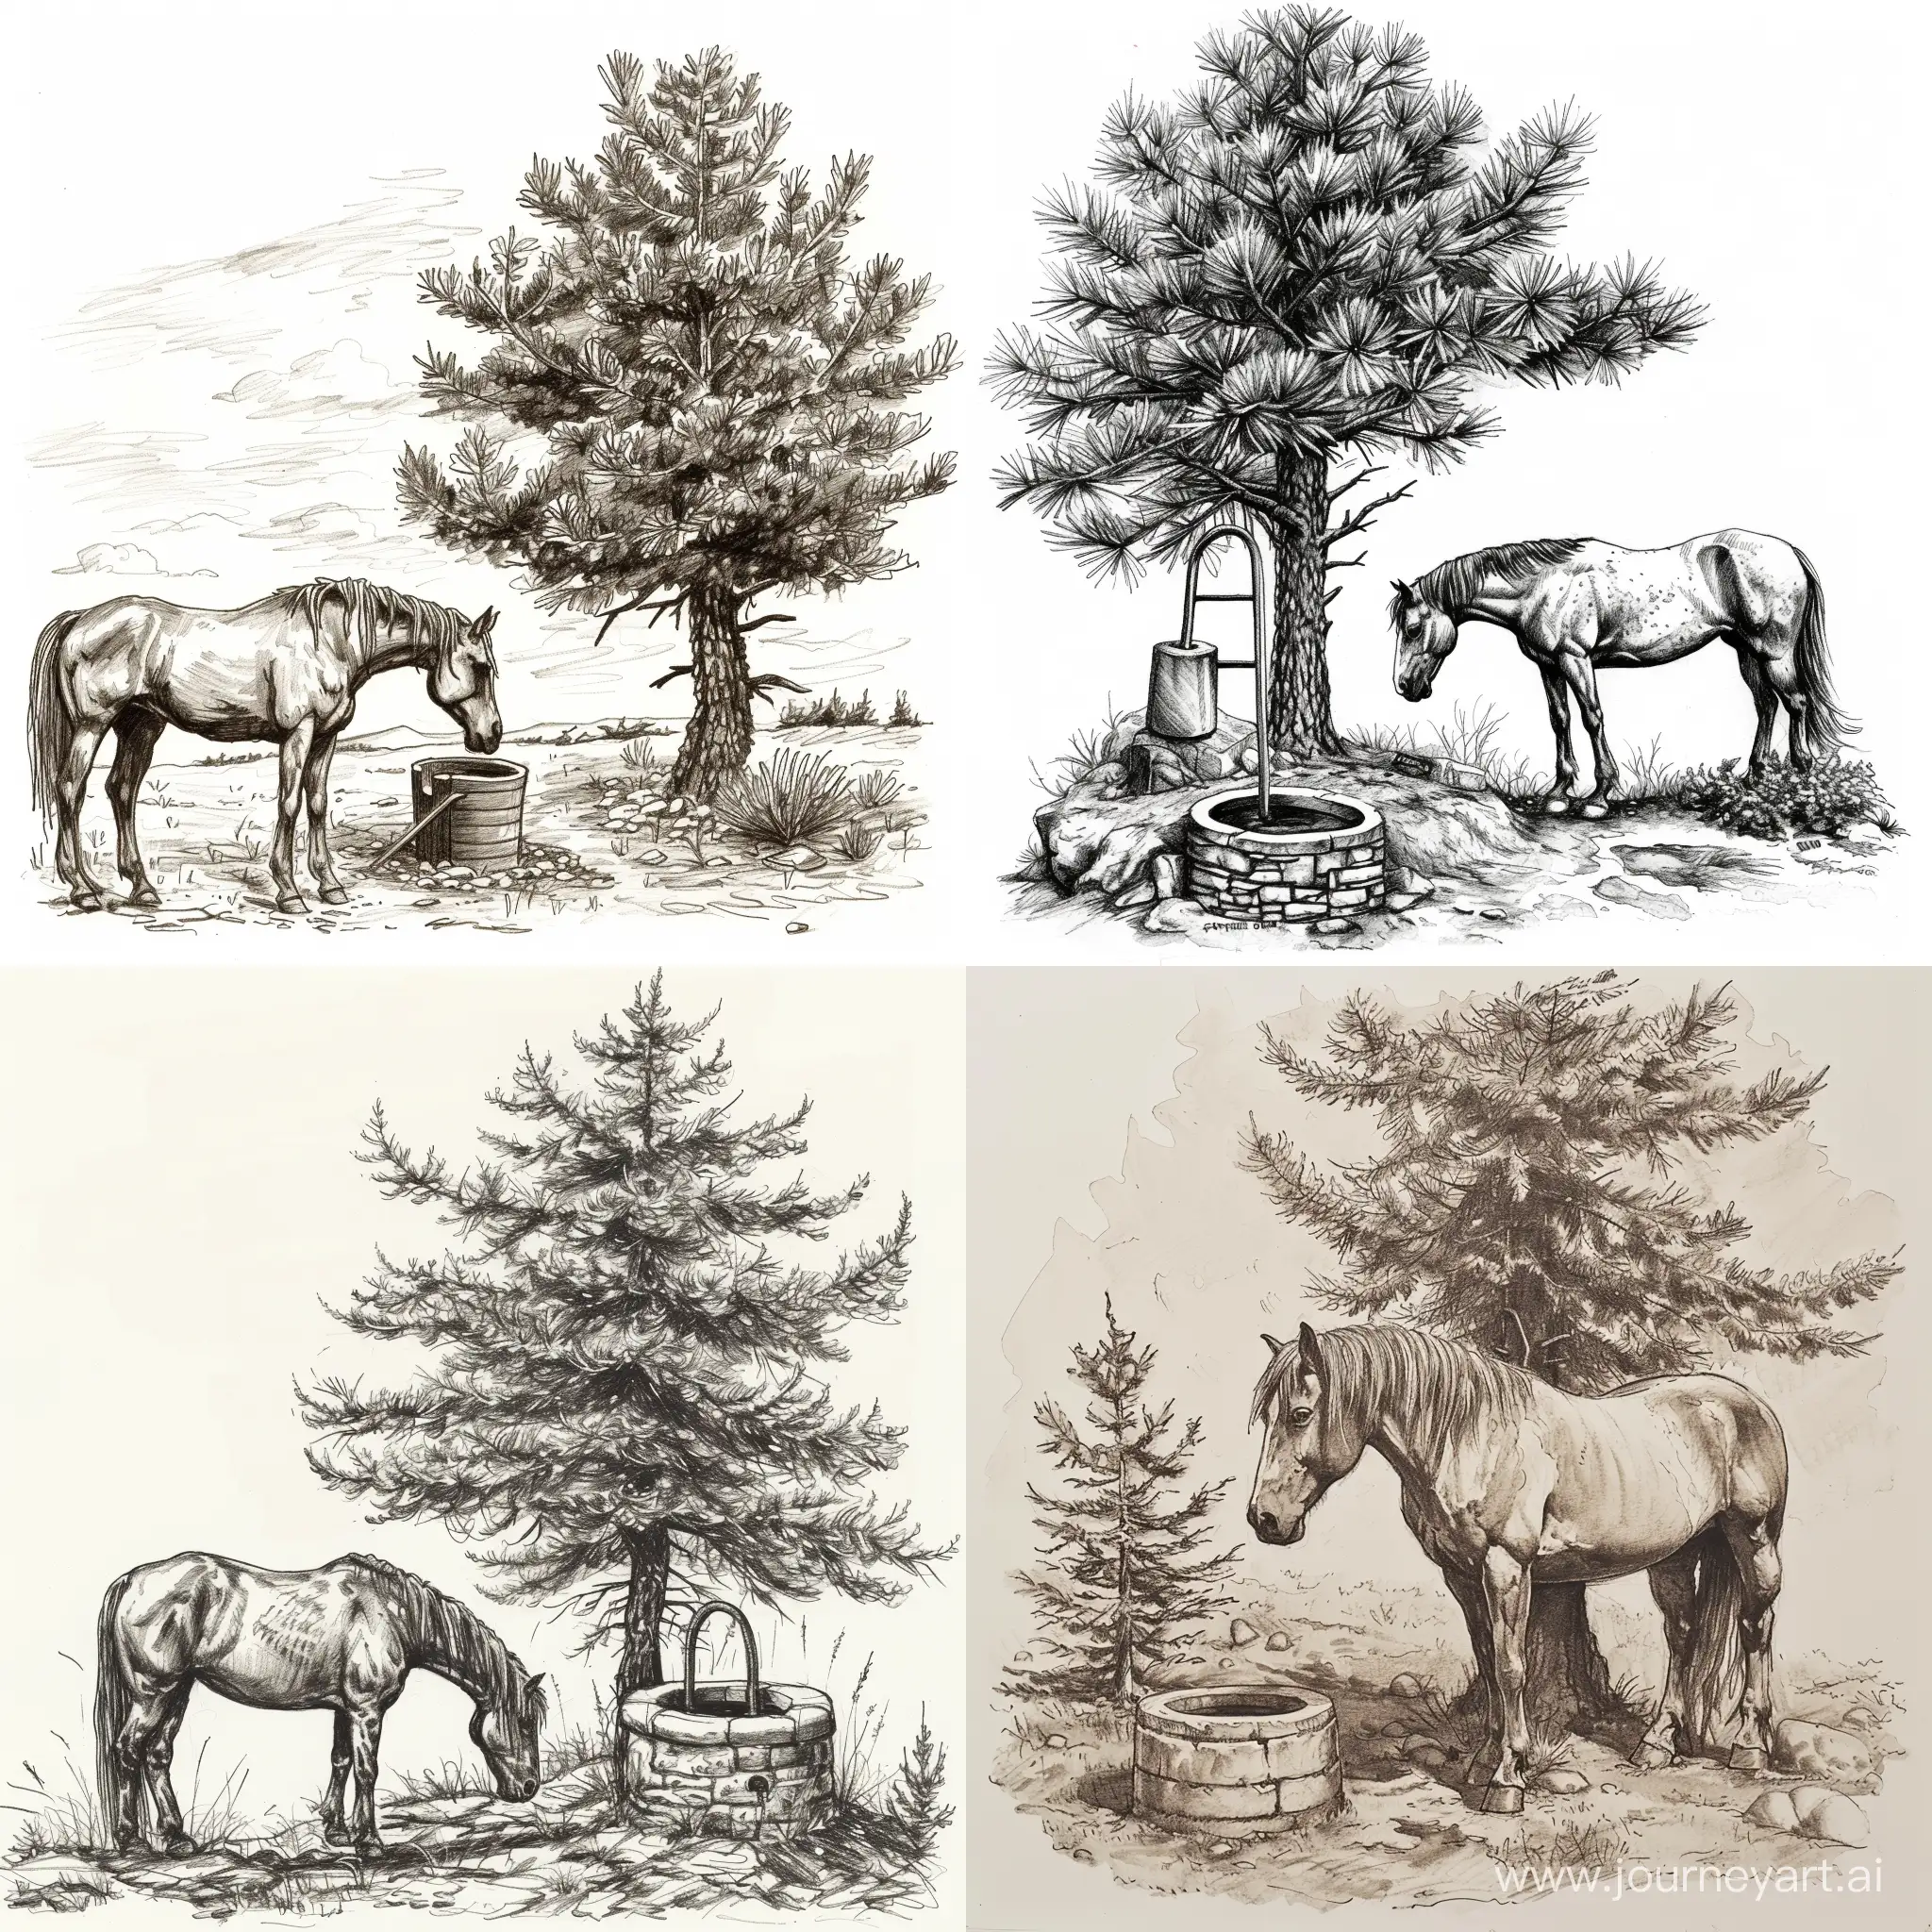 一匹老马，一颗老松树，一口水井，素描风格